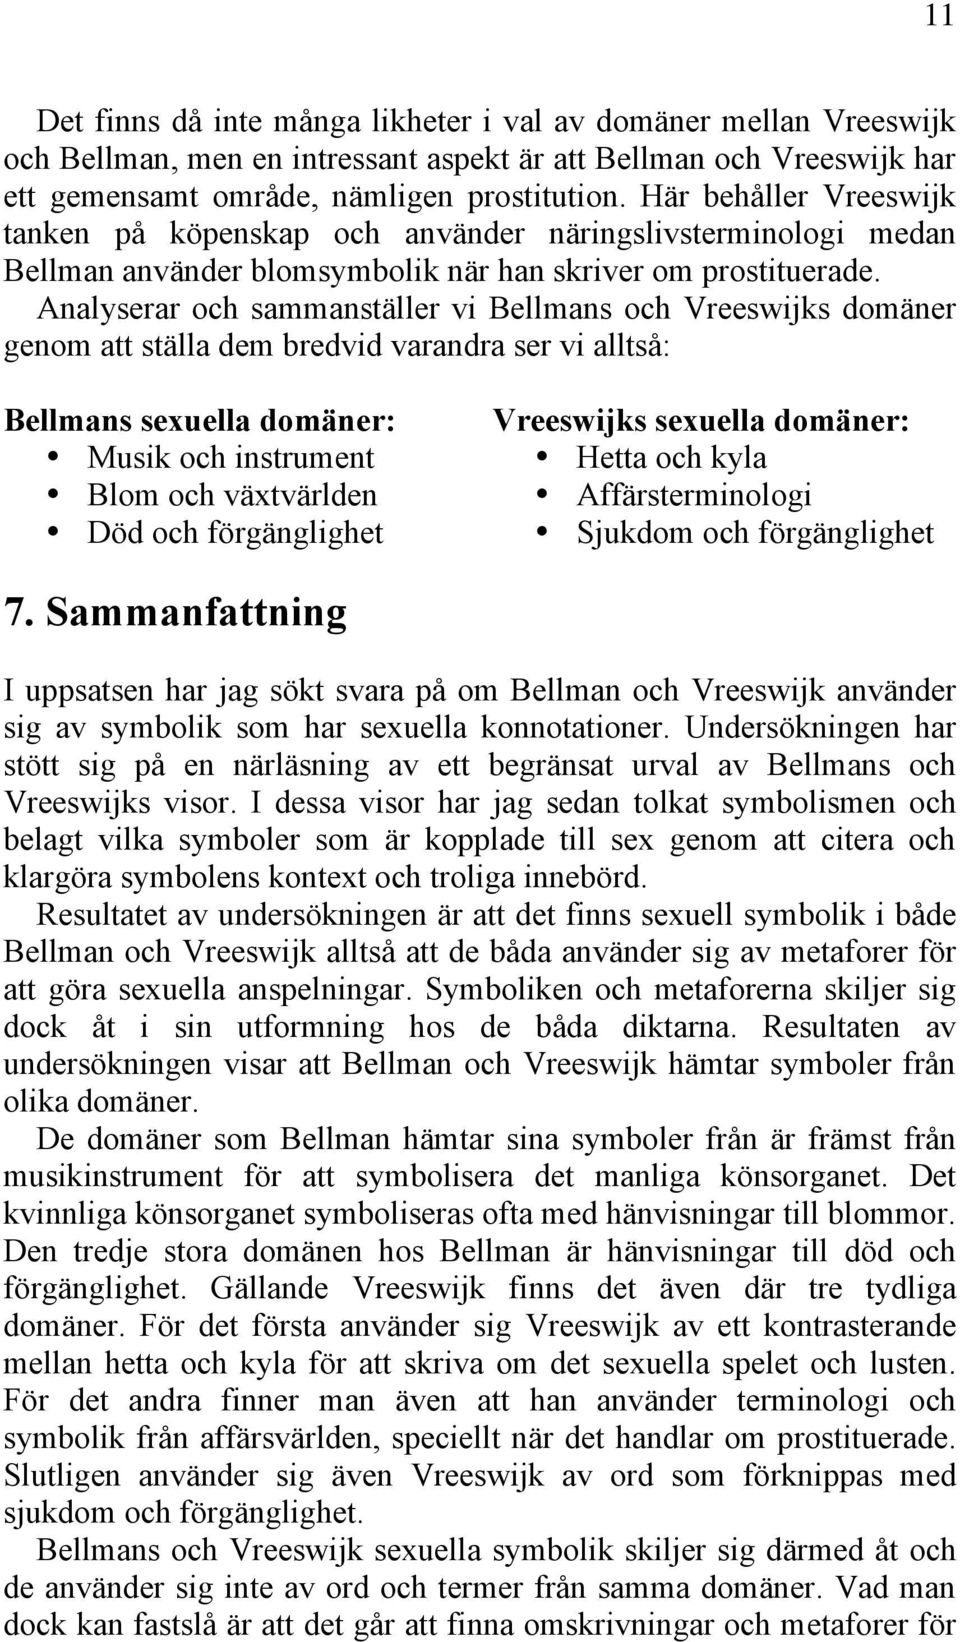 Analyserar och sammanställer vi Bellmans och Vreeswijks domäner genom att ställa dem bredvid varandra ser vi alltså: Bellmans sexuella domäner: Musik och instrument Blom och växtvärlden Död och